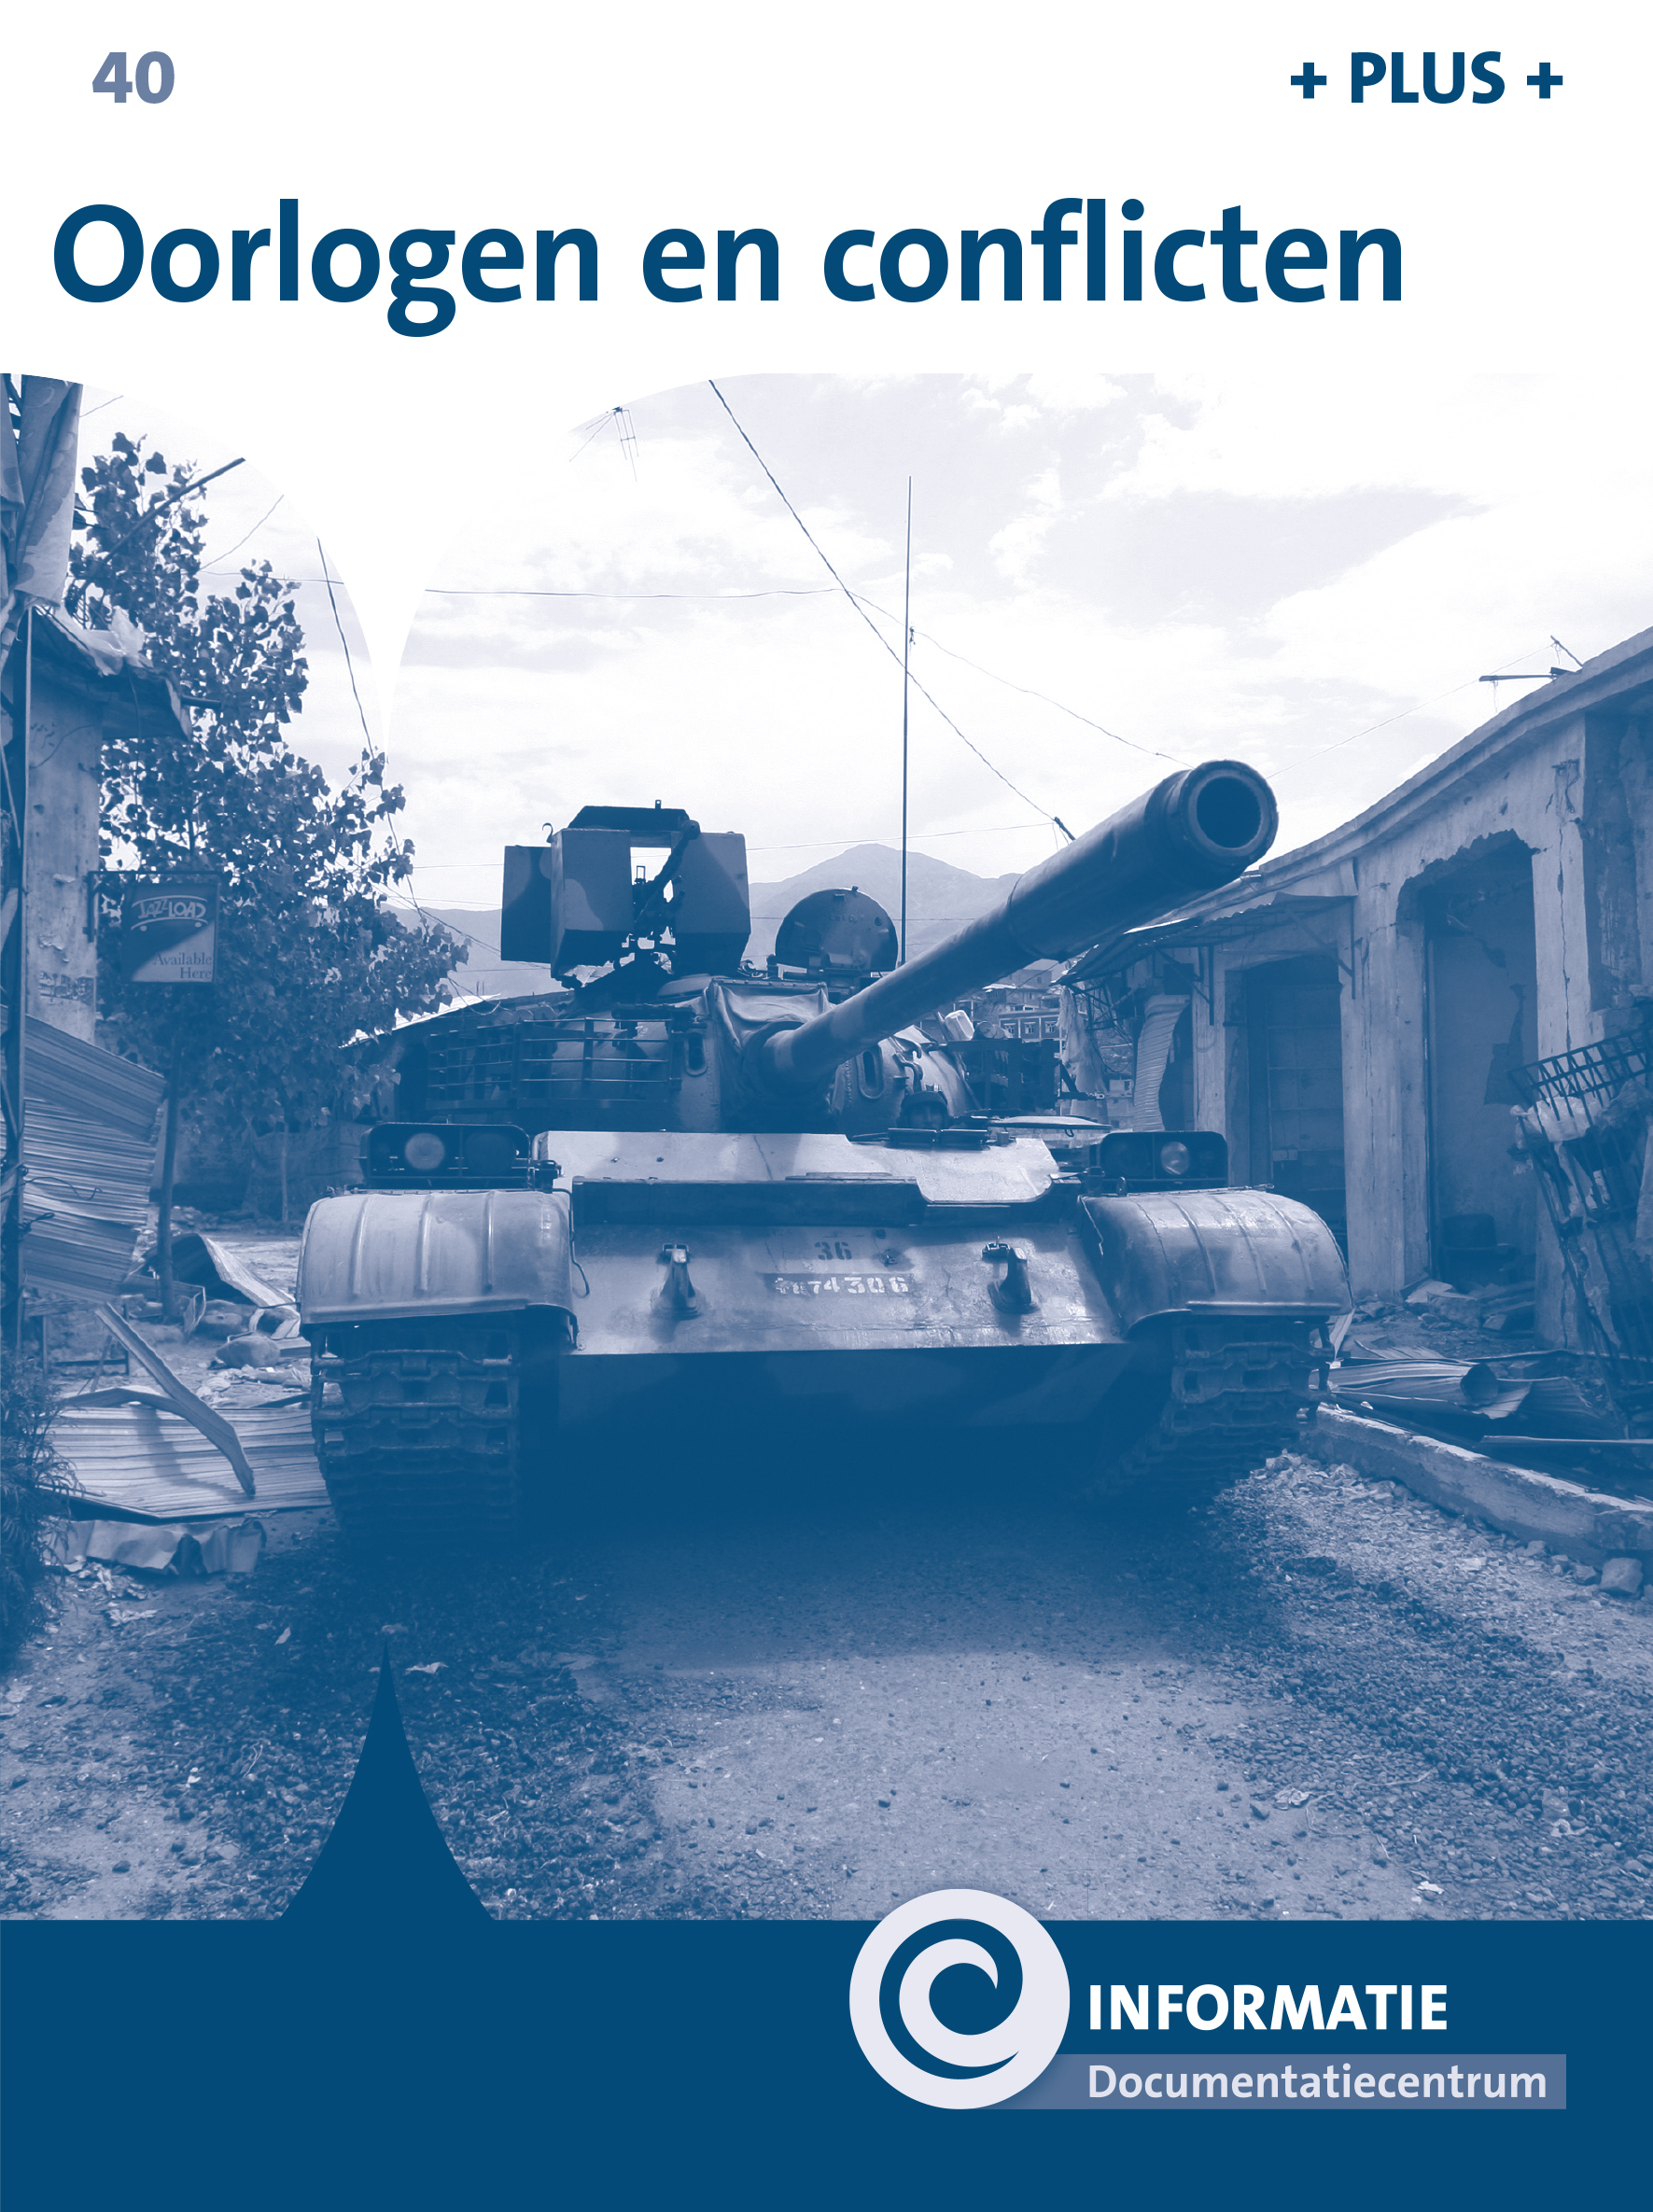 DNKINF040 Oorlogen en conflicten (plusboekje)